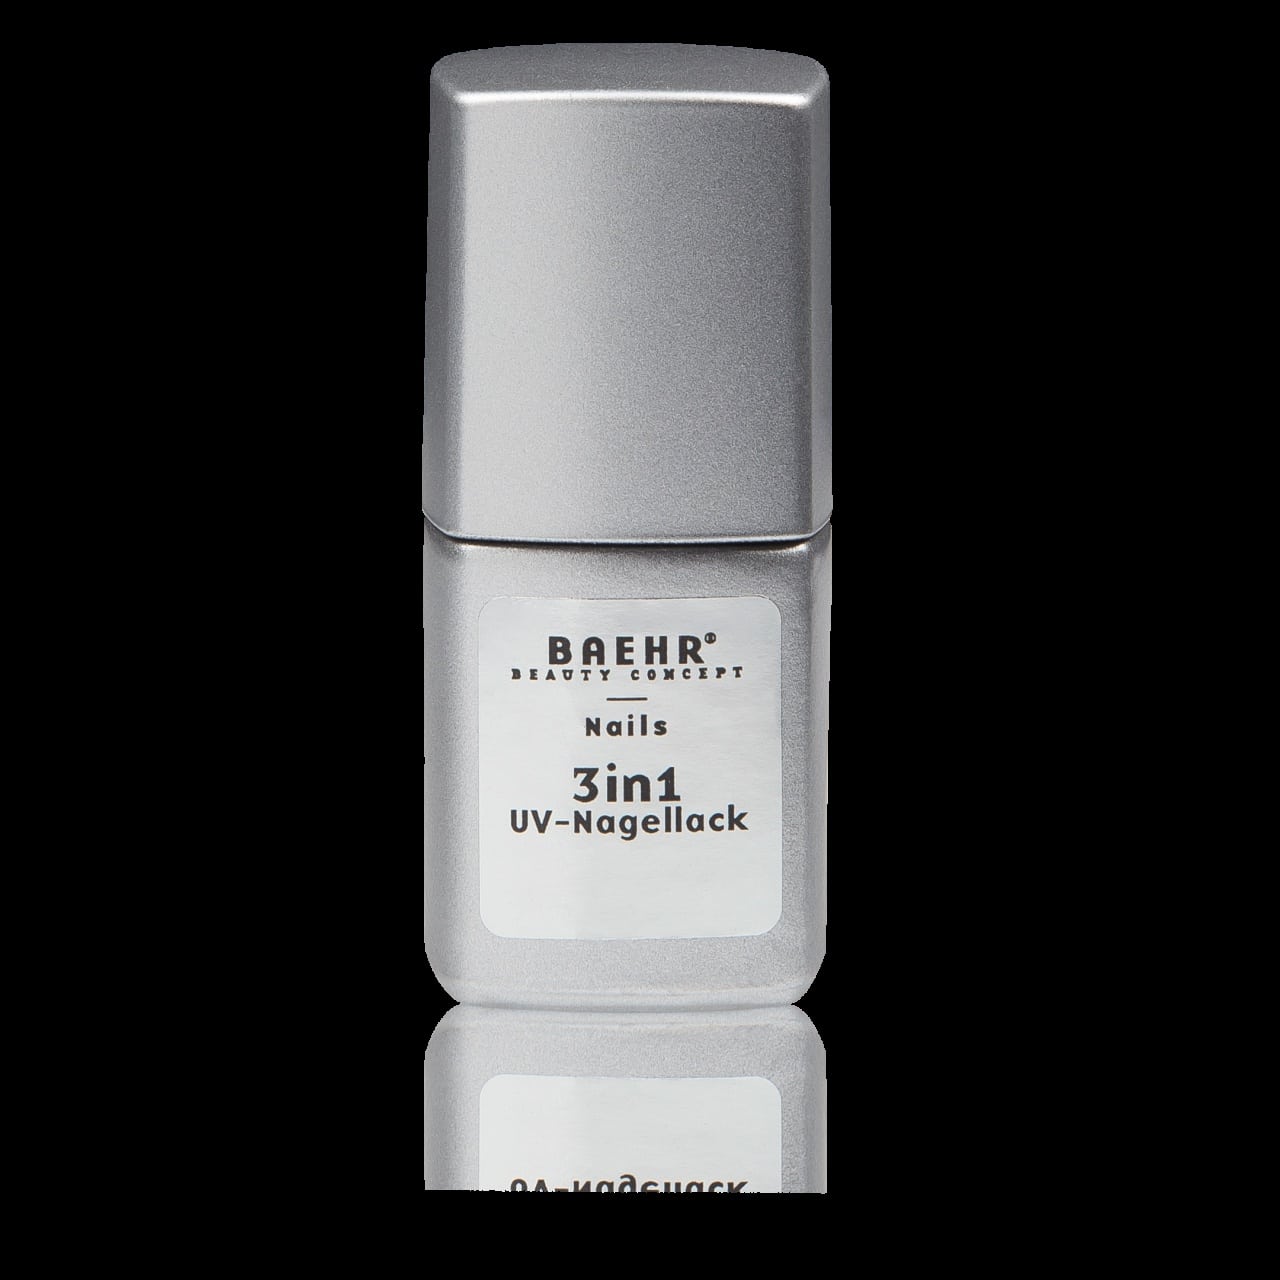 beahr-beauty-concept-3in1-uv-nagellack-glitter-slush-12-ml